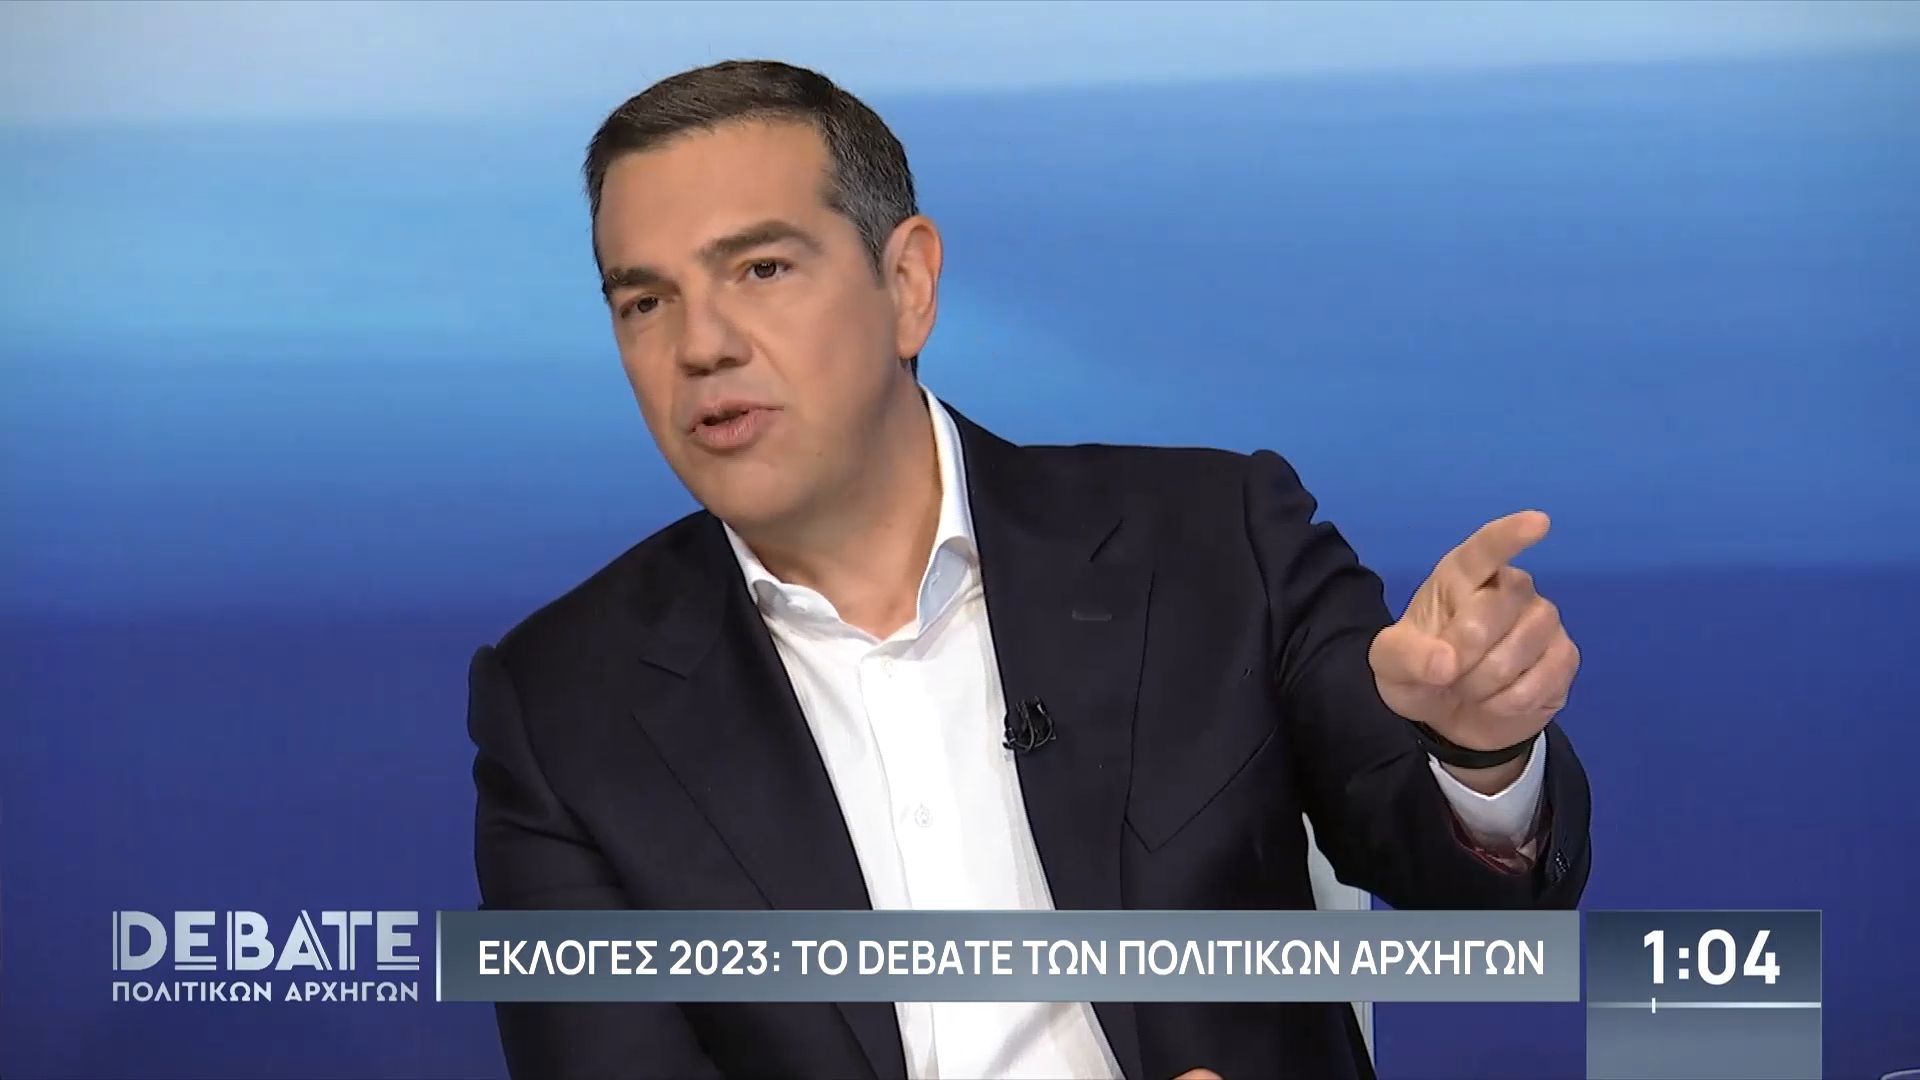 Τσίπρας στο debate για Τέμπη: Ένα κομματικό ρουσφέτι οδήγησε στο θάνατο 57 ανθρώπους